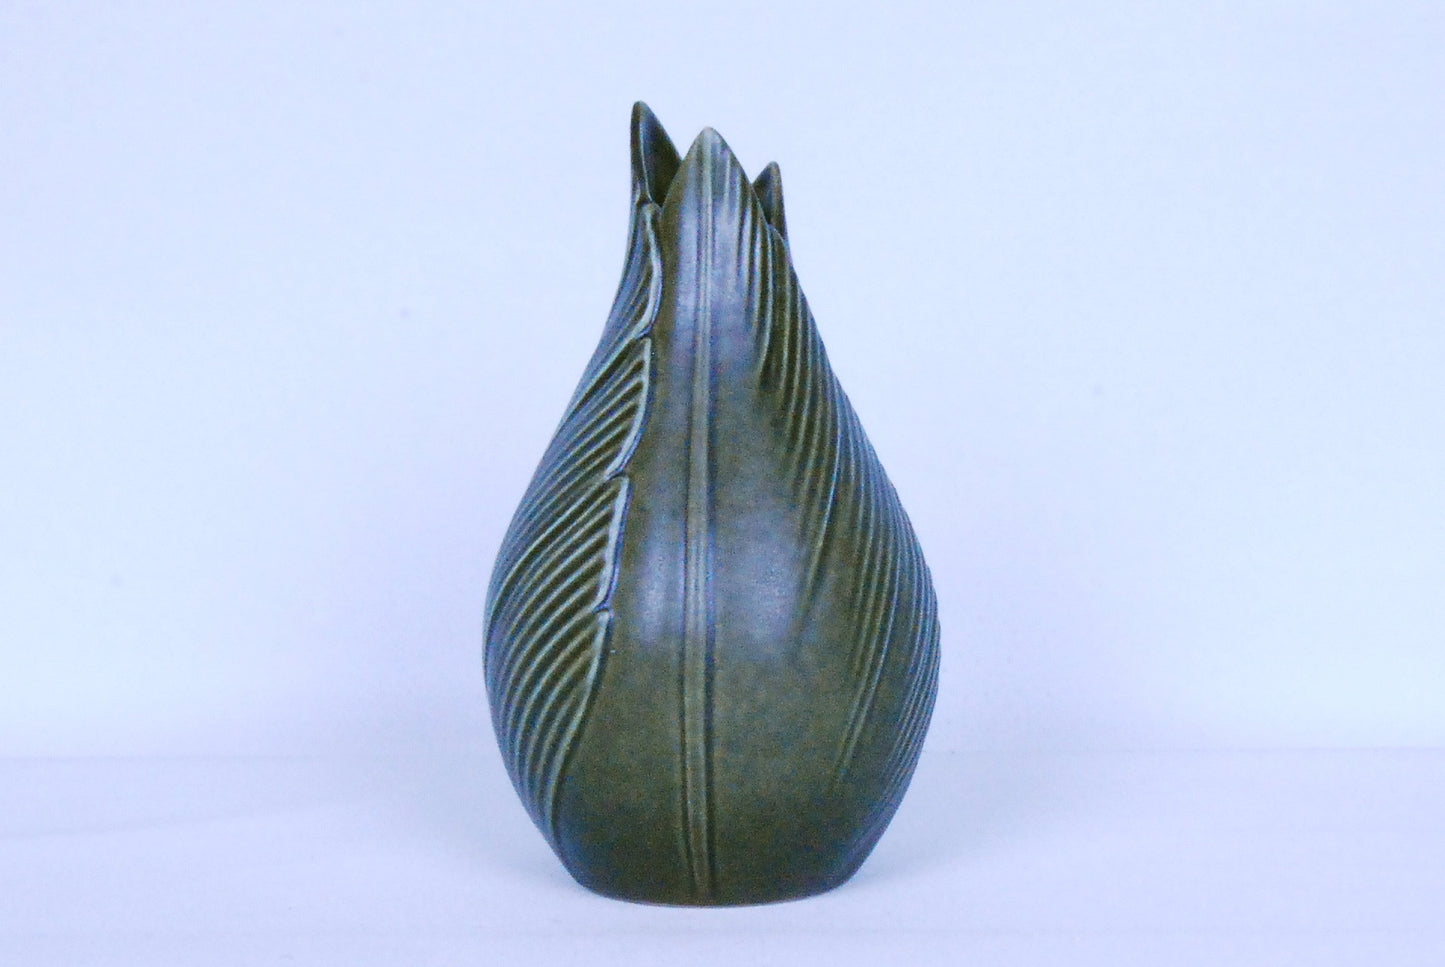 Stoneware bud vase by Søholm